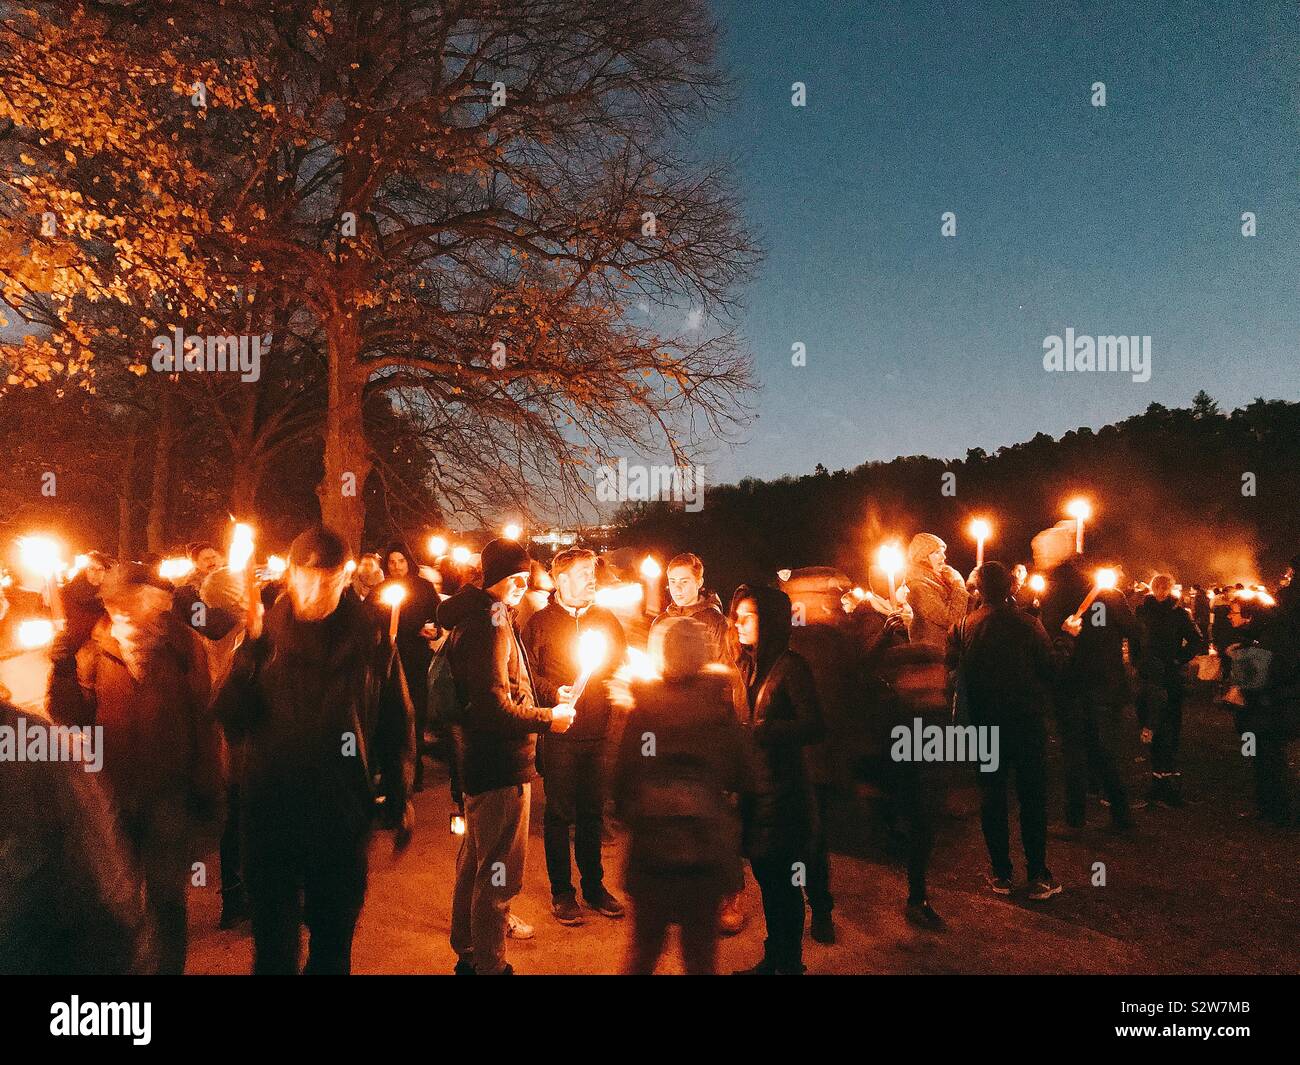 Frigøre halvleder øve sig Annual Light Festival in Stockholm, Sweden Stock Photo - Alamy